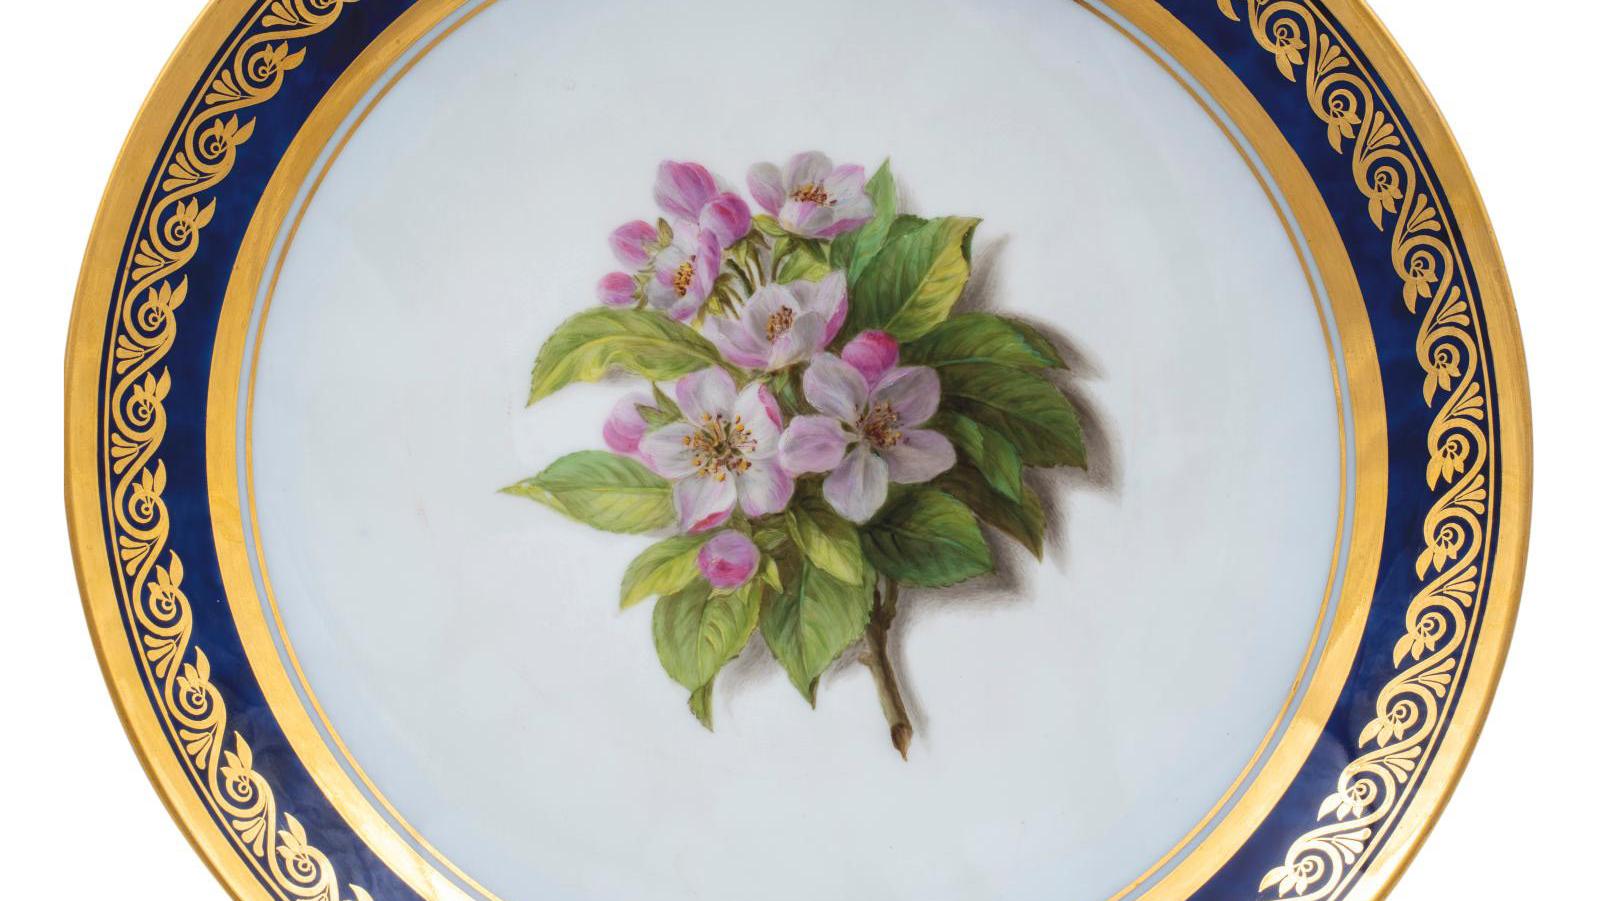 Manufacture Royale de Sèvres, 1825-1826, six hard porcelain plates from the Duchesse... The Duchesse de Berry’s Porcelain Orchard by Sèvres